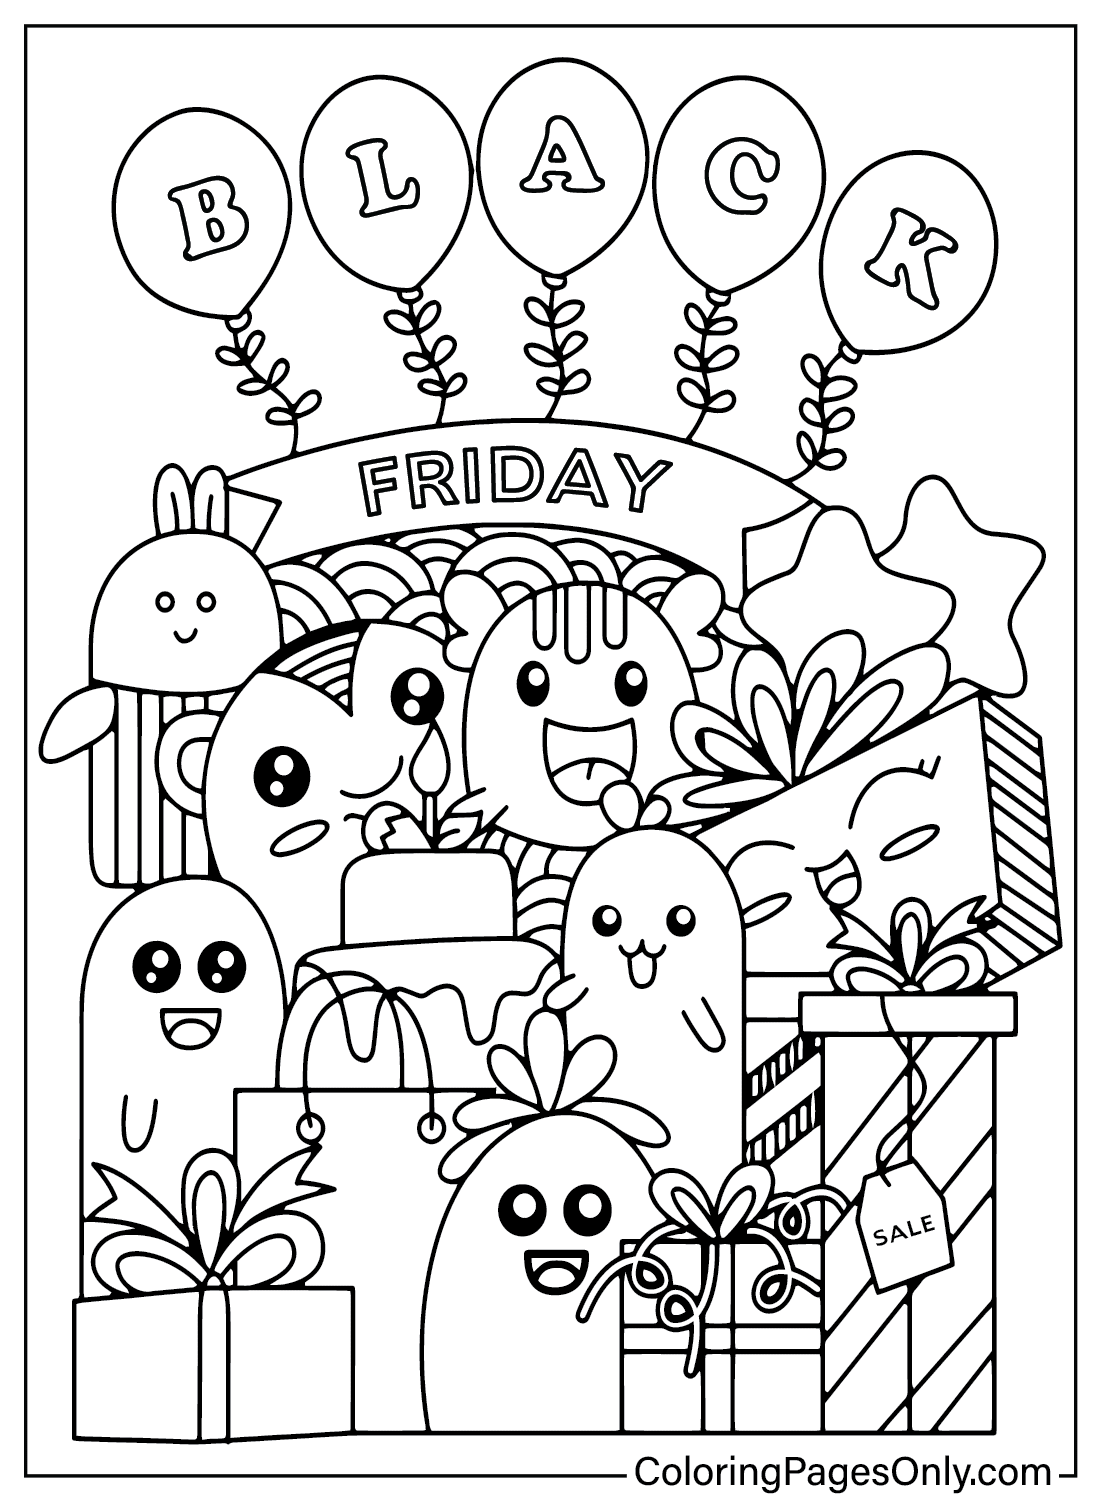 Página para colorir da Black Friday para impressão gratuita na Black Friday